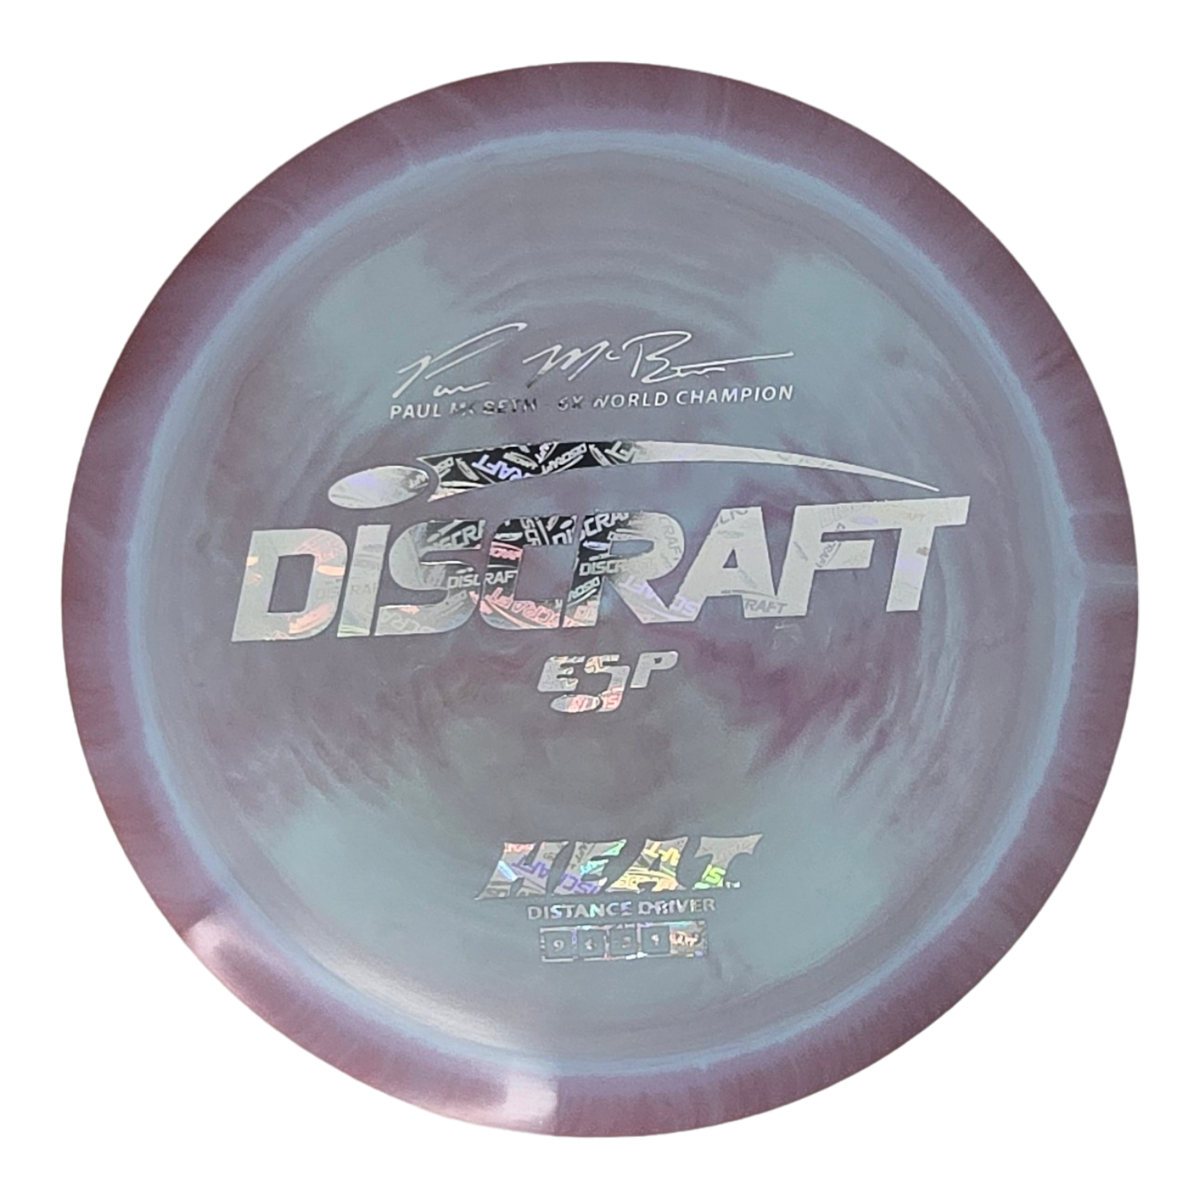 Discraft ESP Heat - Paul McBeth 6x Signature